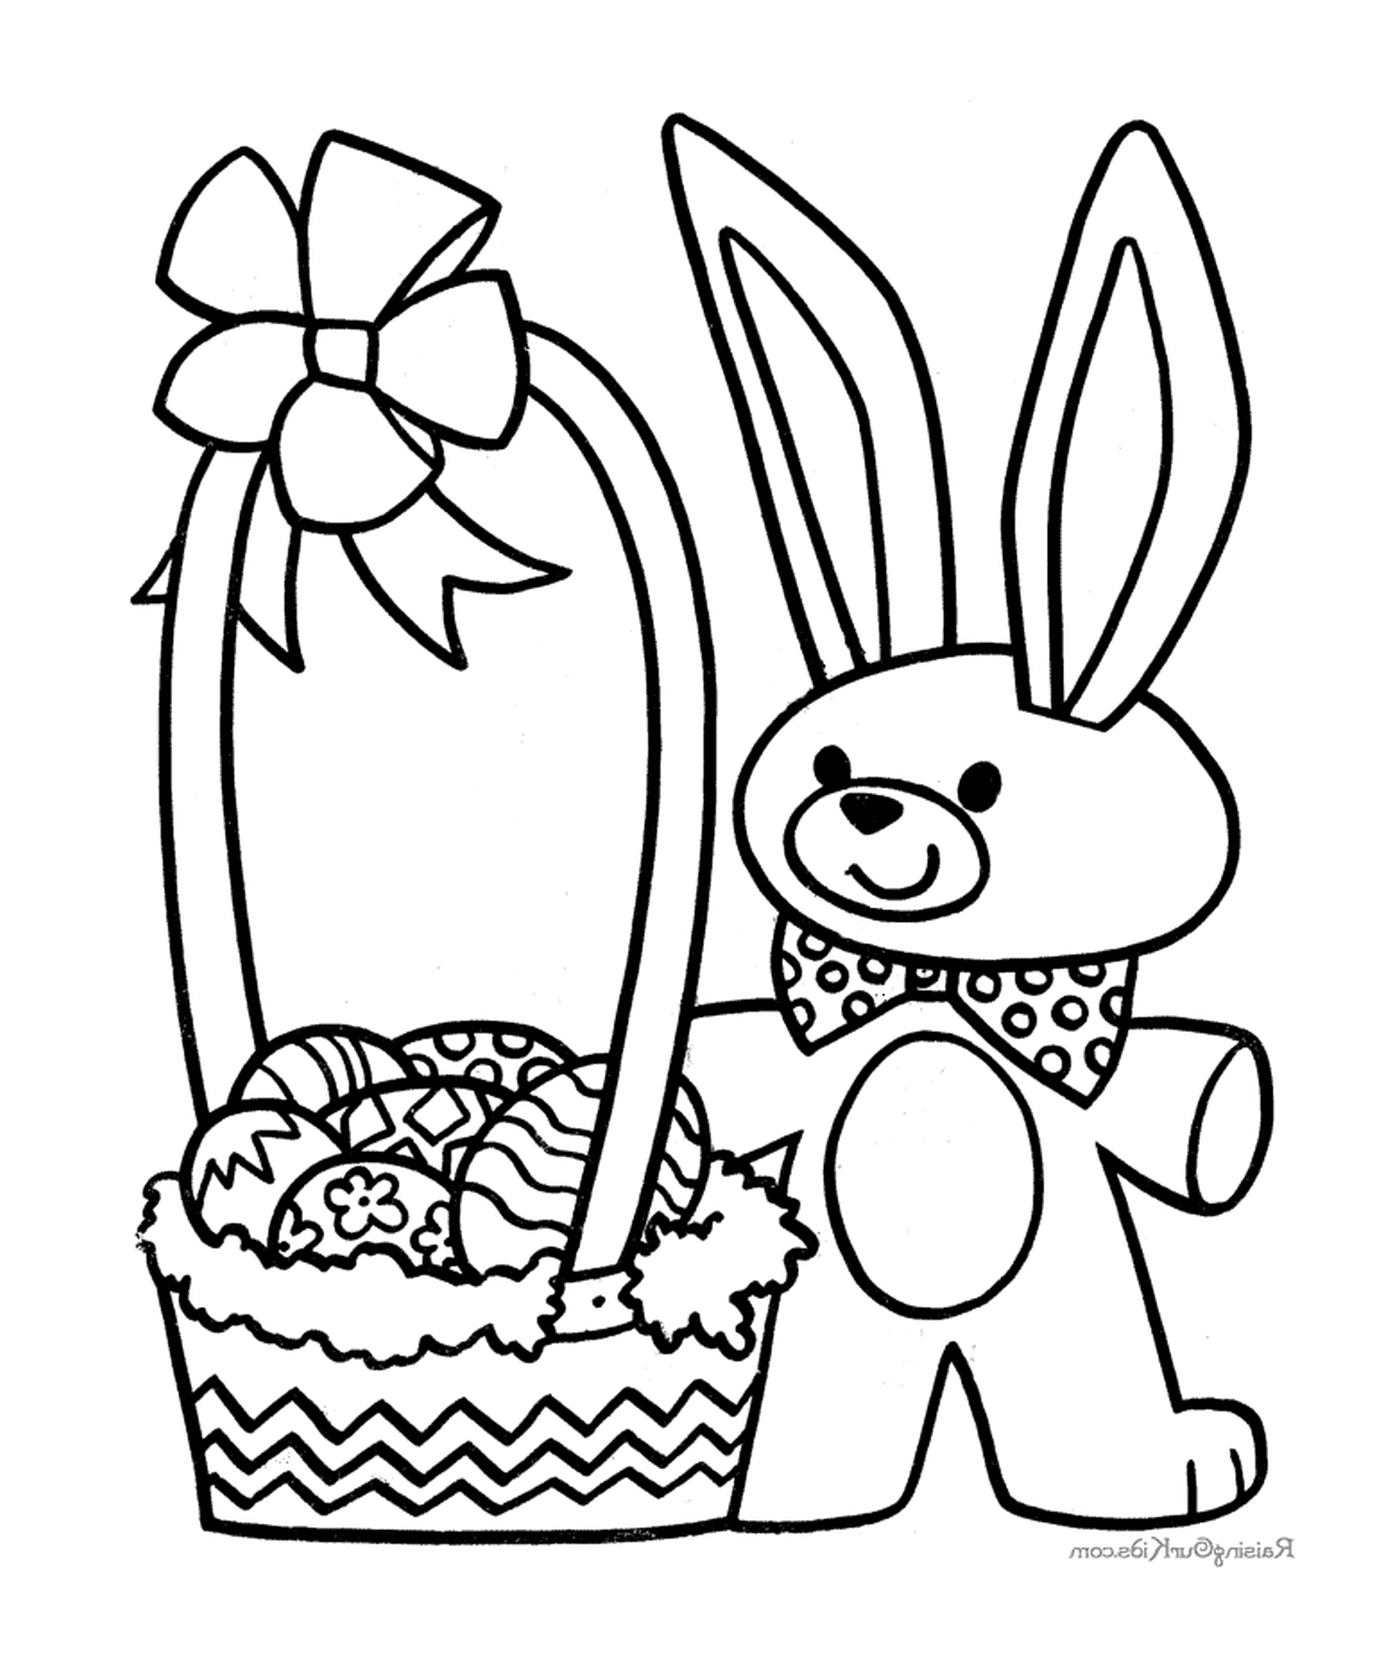  复活节兔子和一篮子鸡蛋 